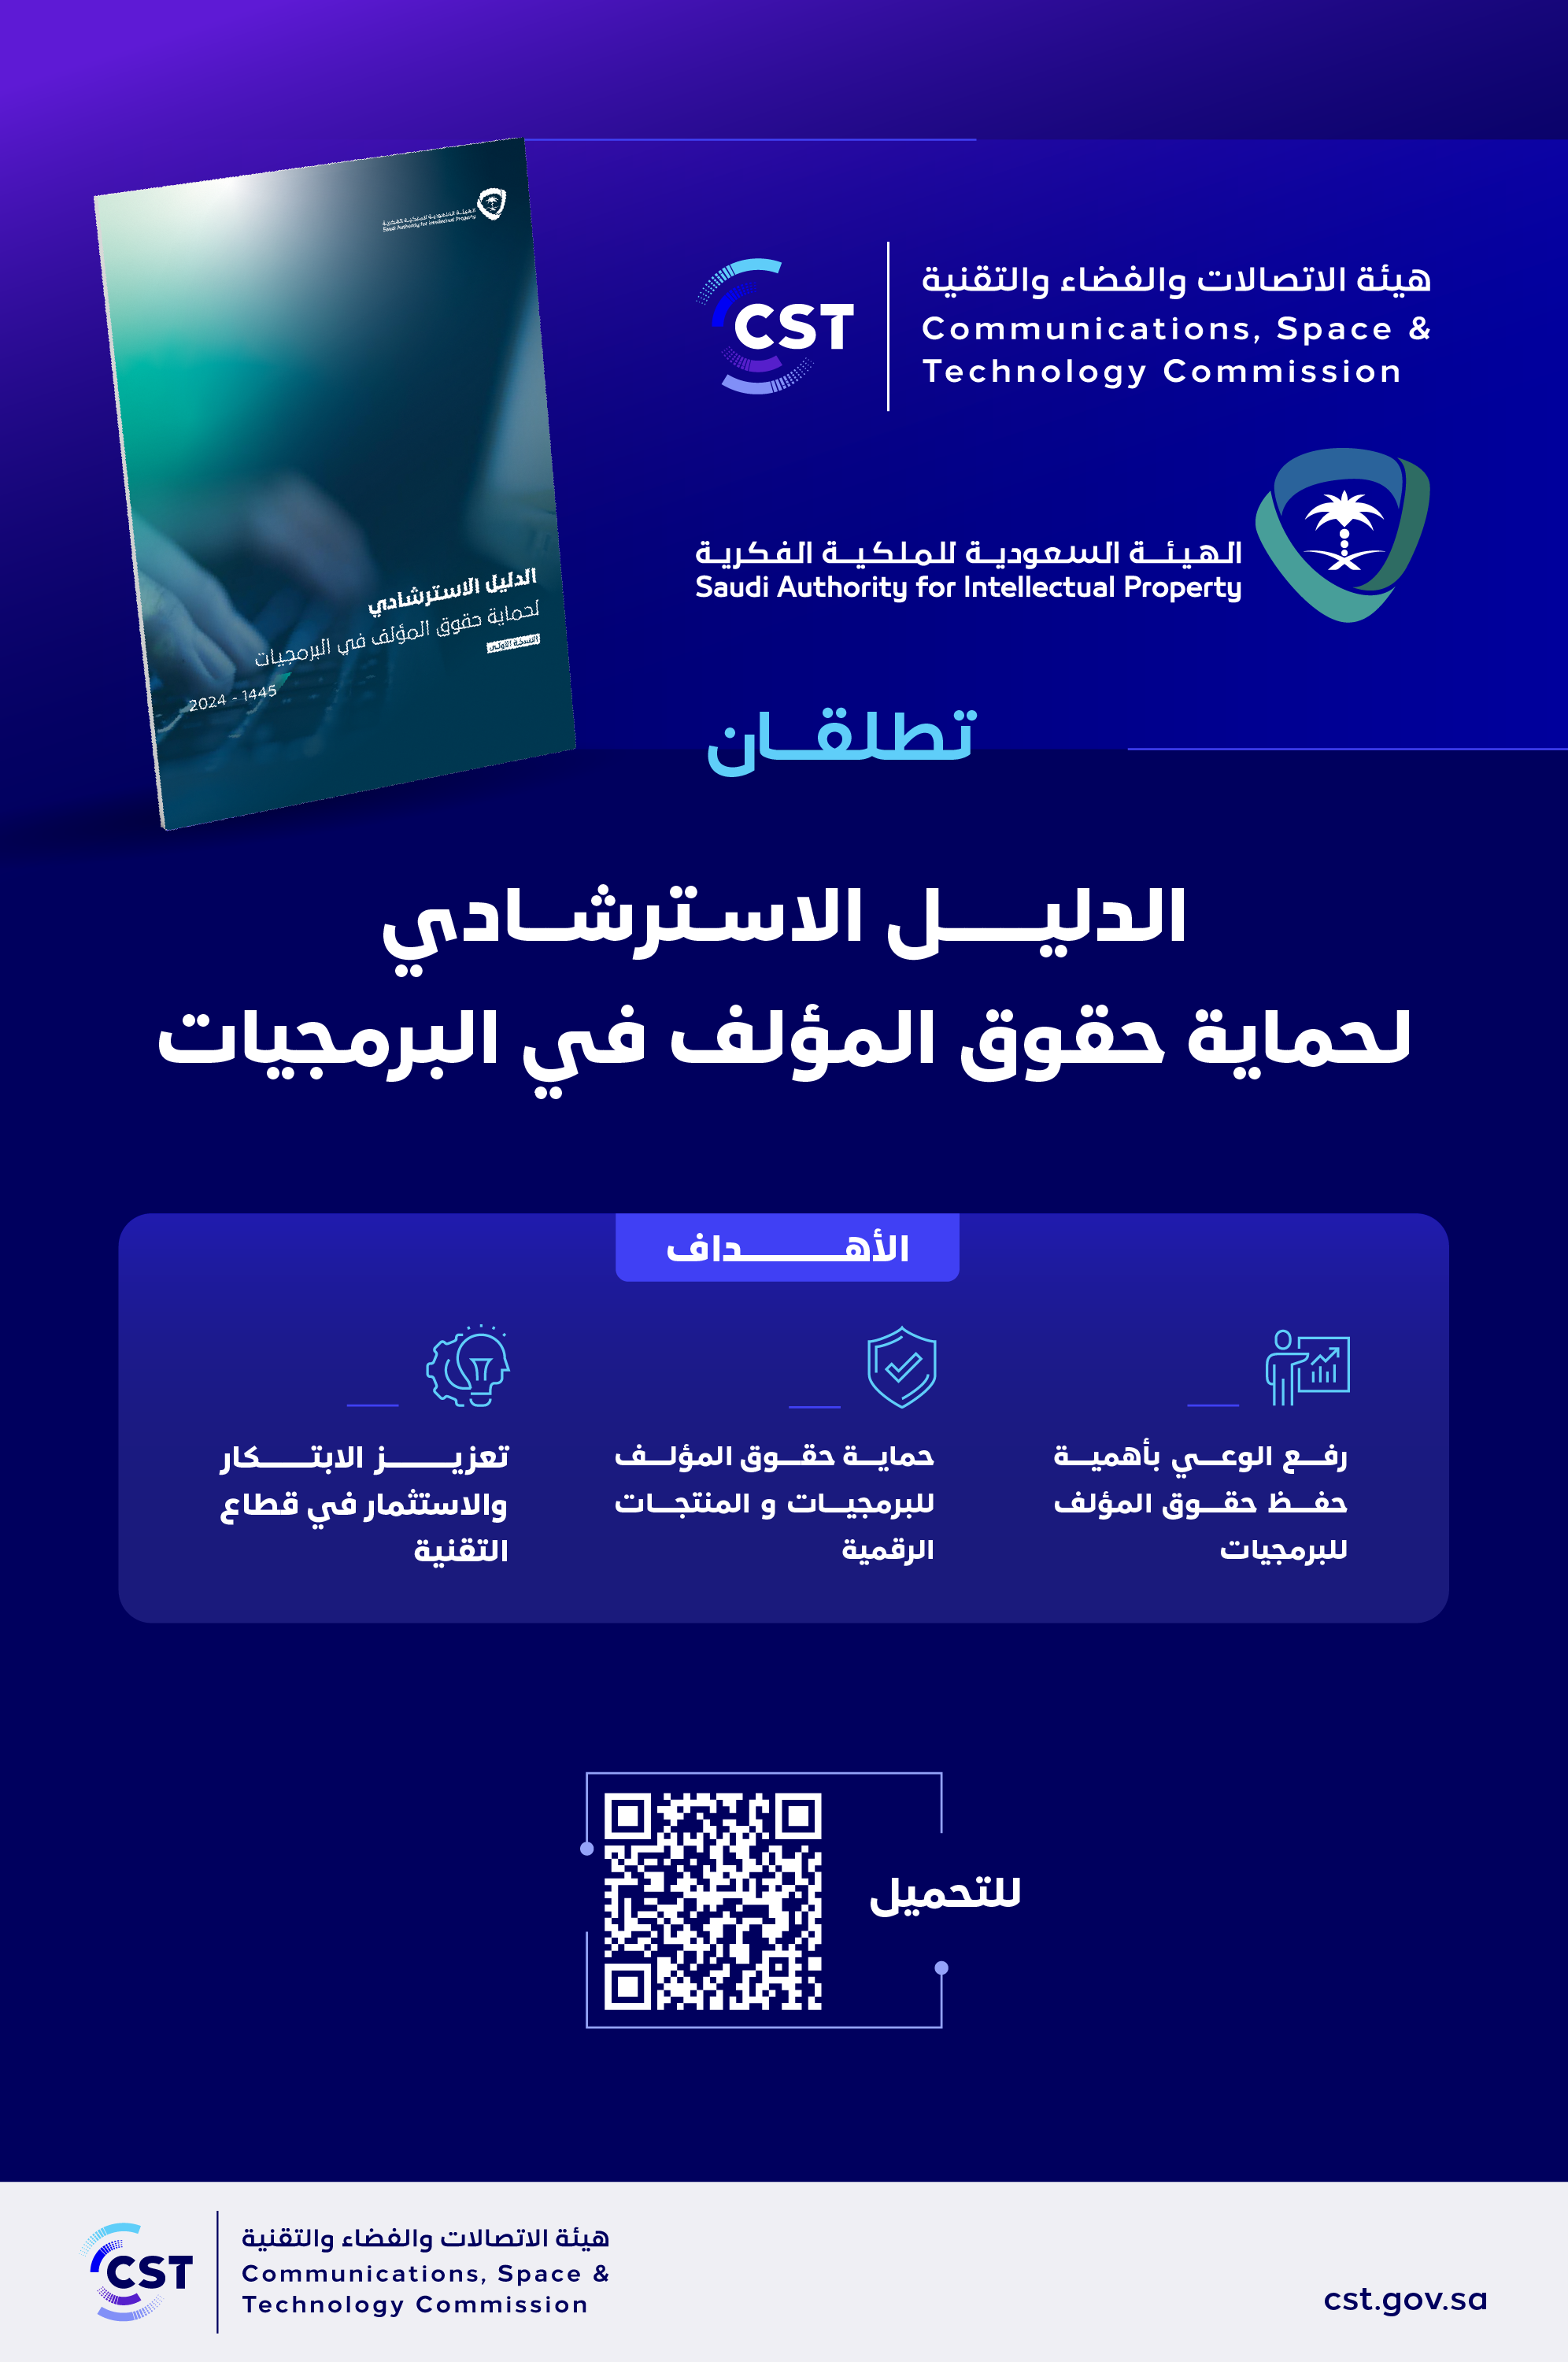 الهيئة السعودية للملكية الفكرية وCST تطلقان الدليل الاسترشادي لحماية حقوق المؤلف في البرمجيات.png